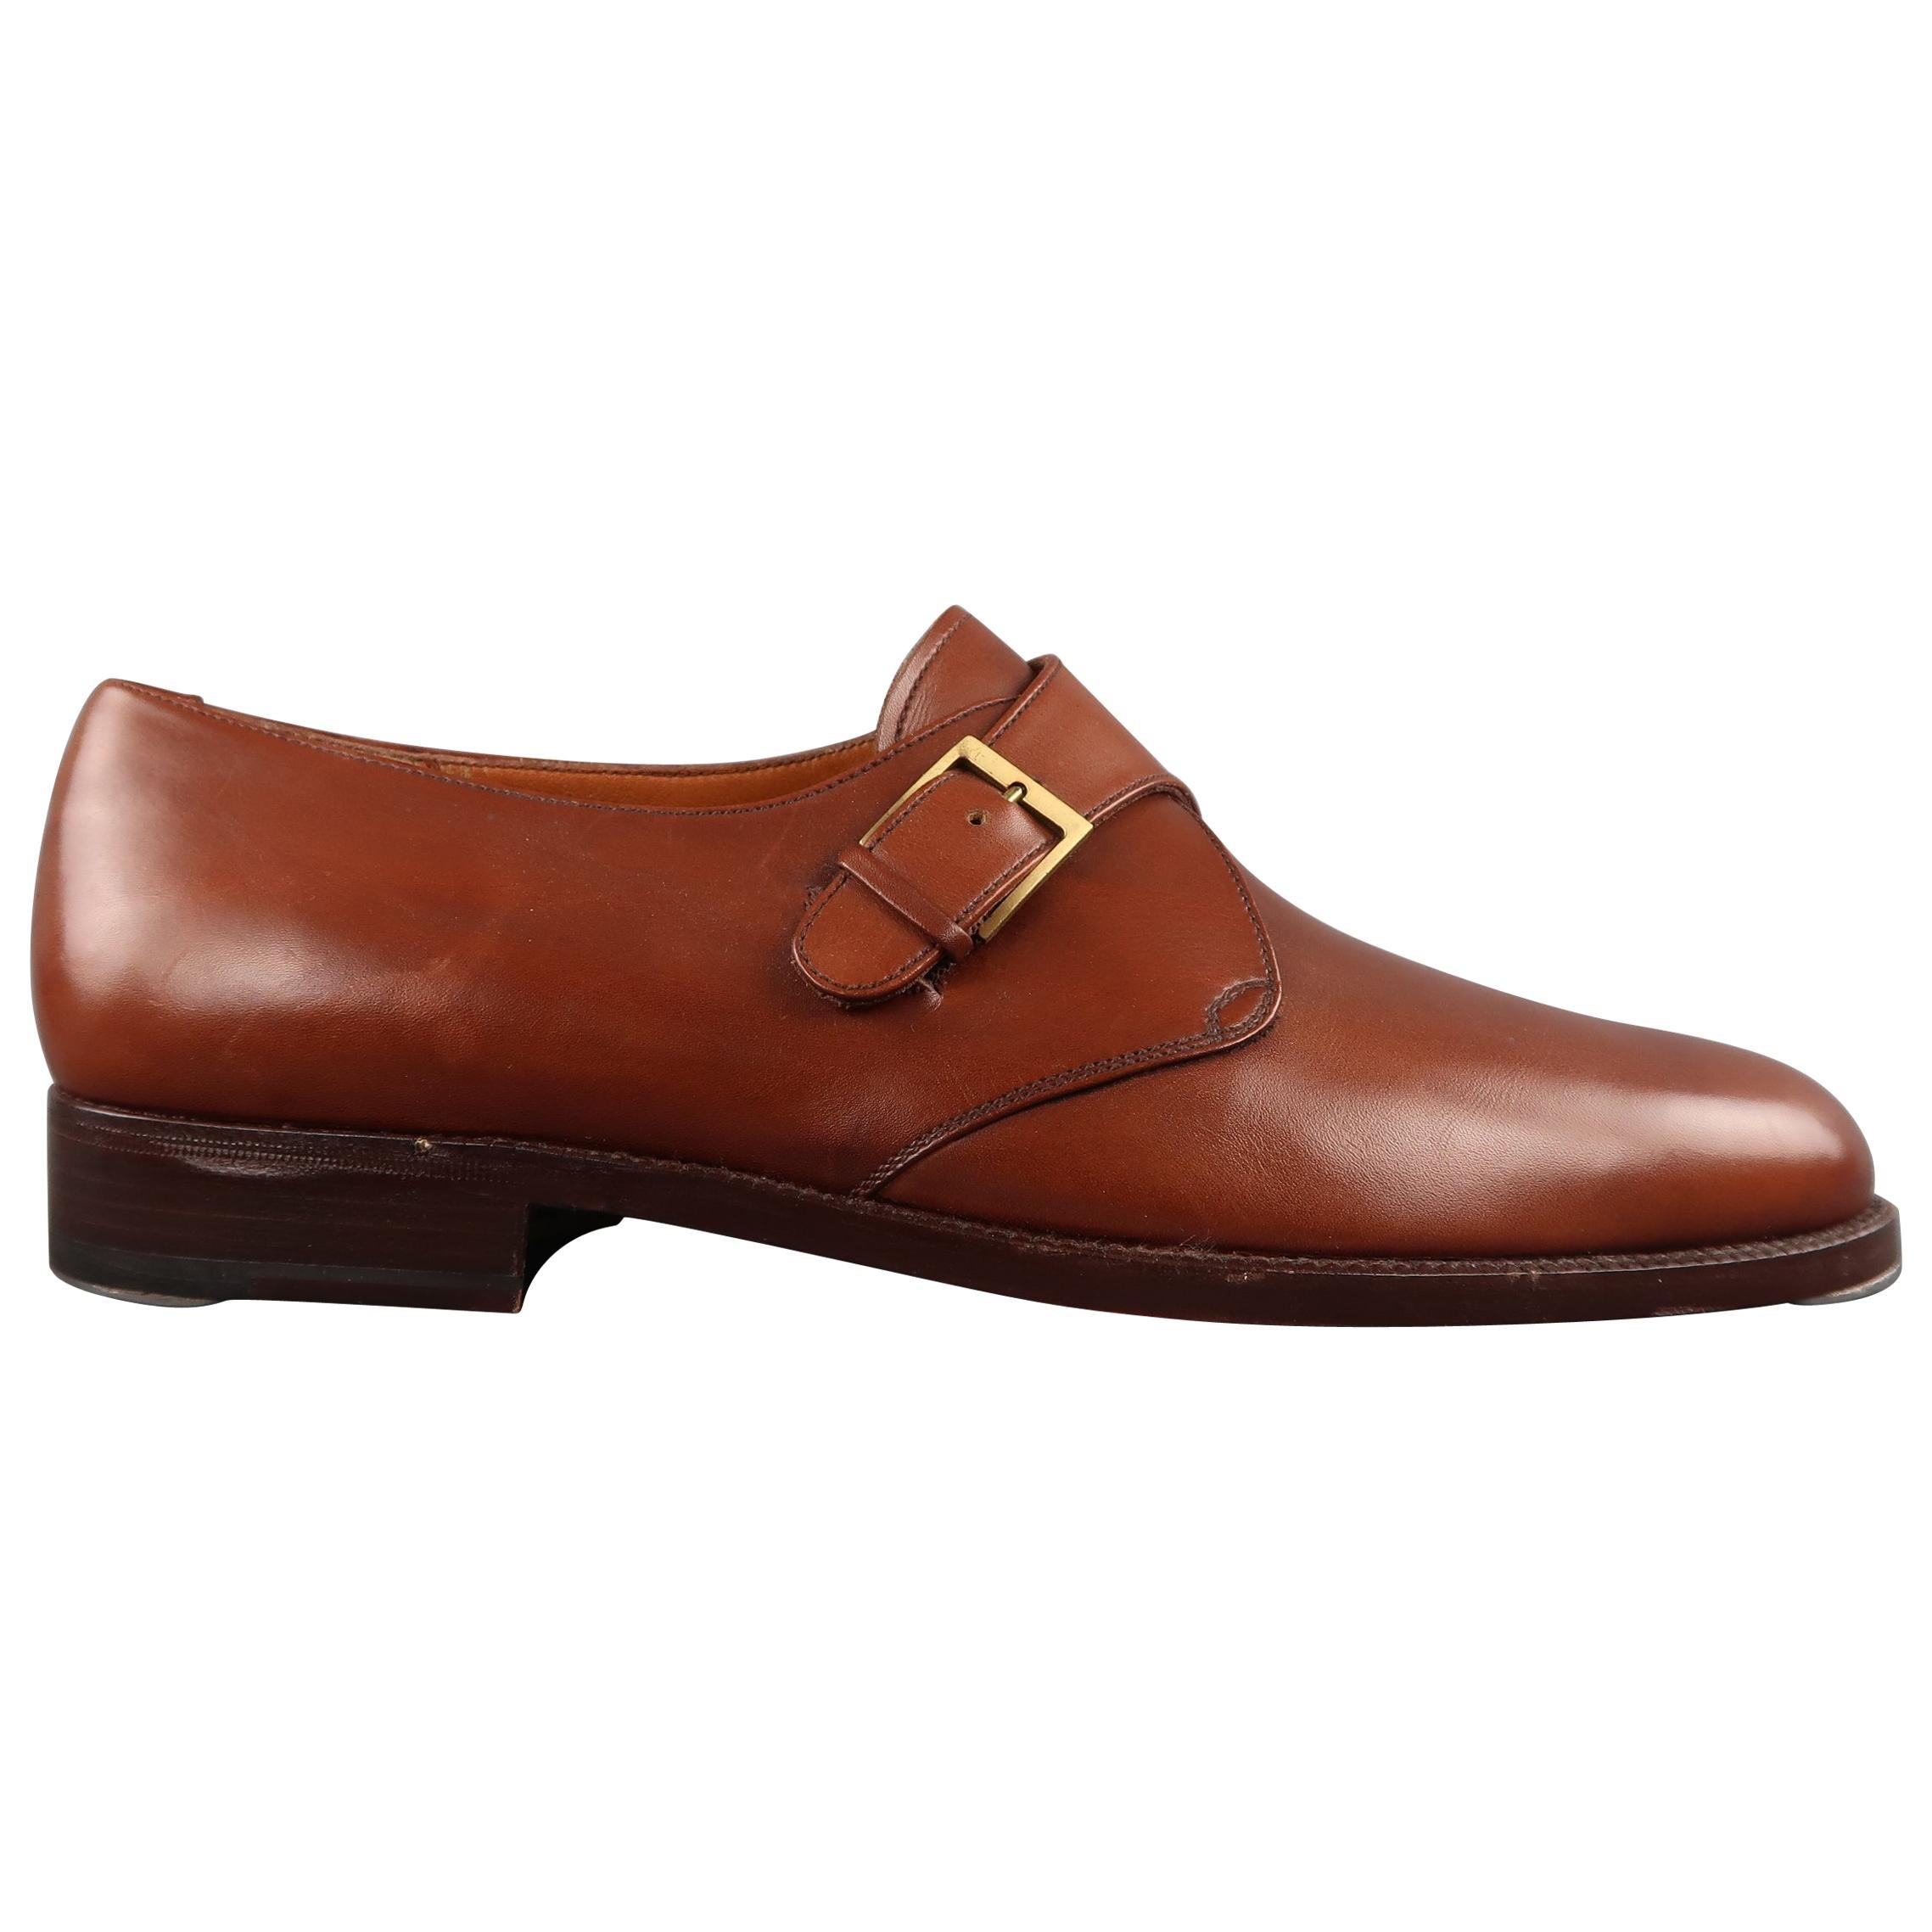 Men's SALVATORE FERRAGAMO Size 8.5 Tan Leather Monk Strap Loafers